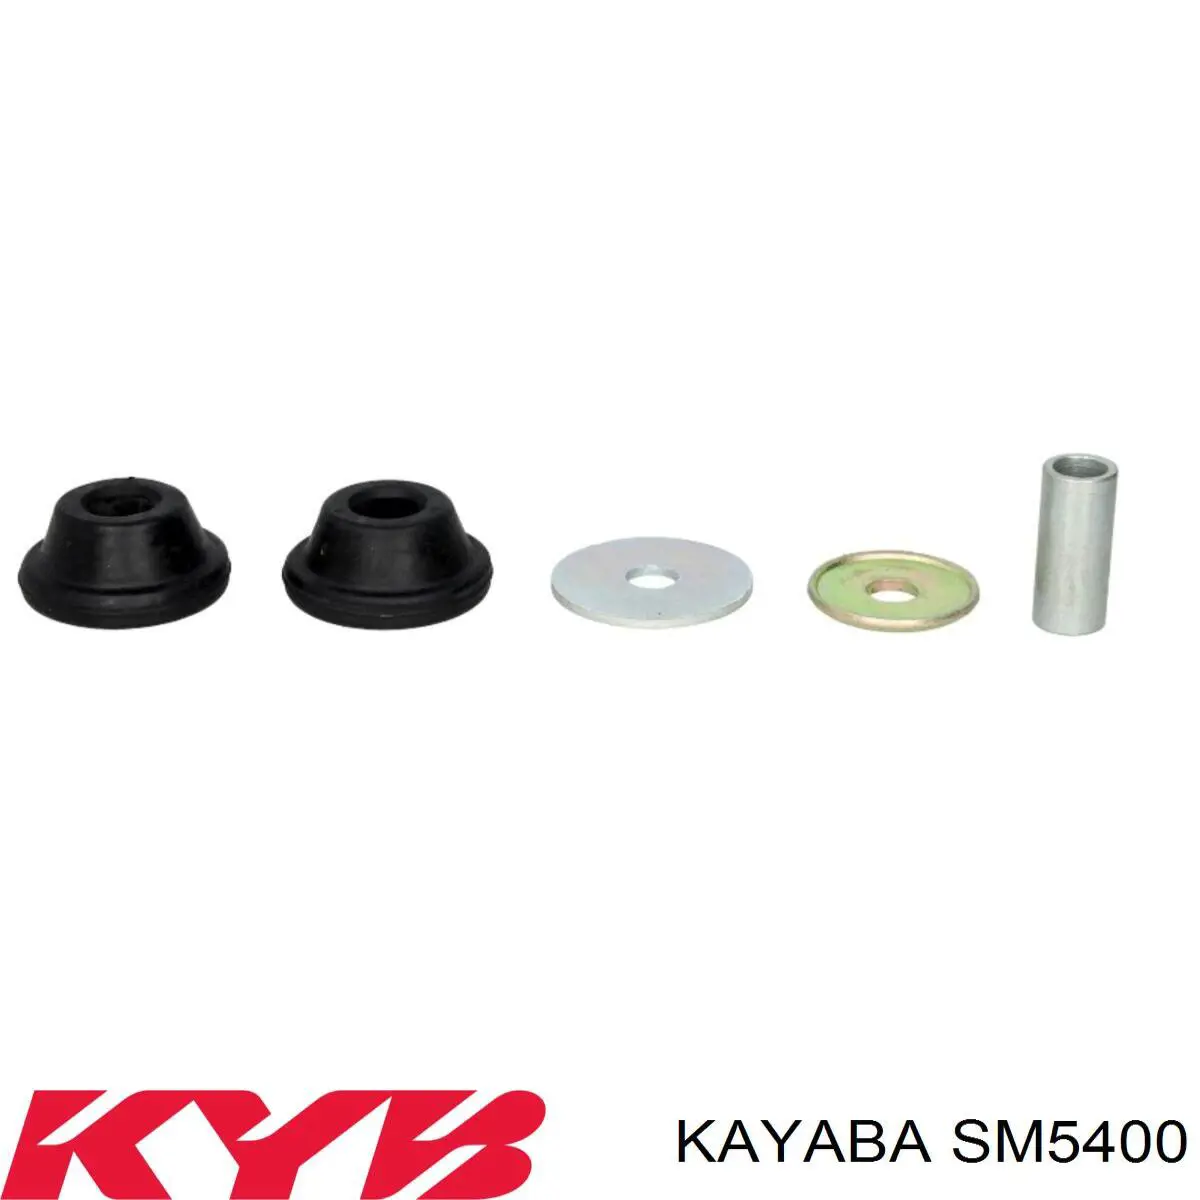 SM5400 Kayaba copela de amortiguador trasero